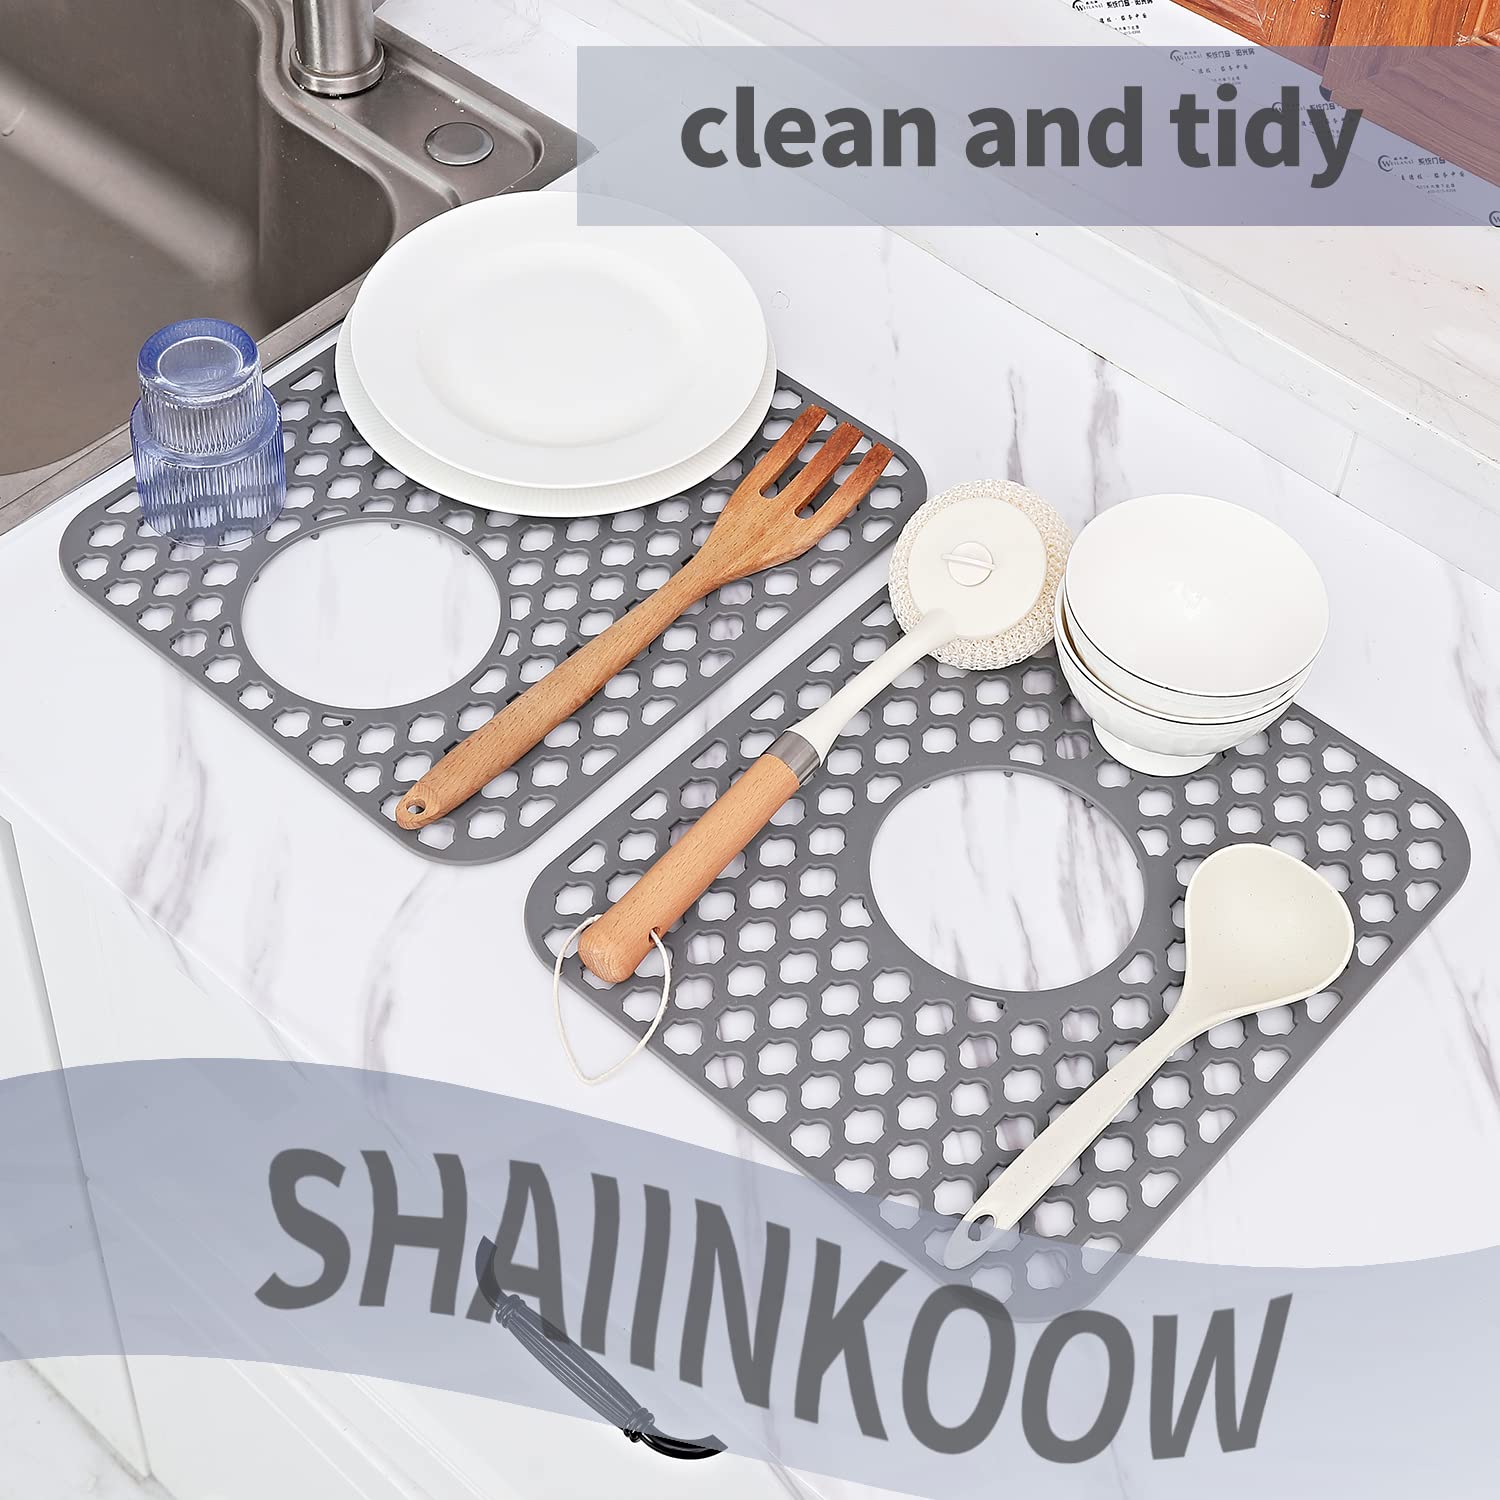 SHAIINKOOW Silicone Kitchen Sink Mat, Kitchen Sink Protector, Silicone Sink Protectors for Kitchen Sink, Kitchen Sink Mats, Sink Mats for Bottom of Kitchen Sink, (13.6" X 11.6", Centre Drain, Black)